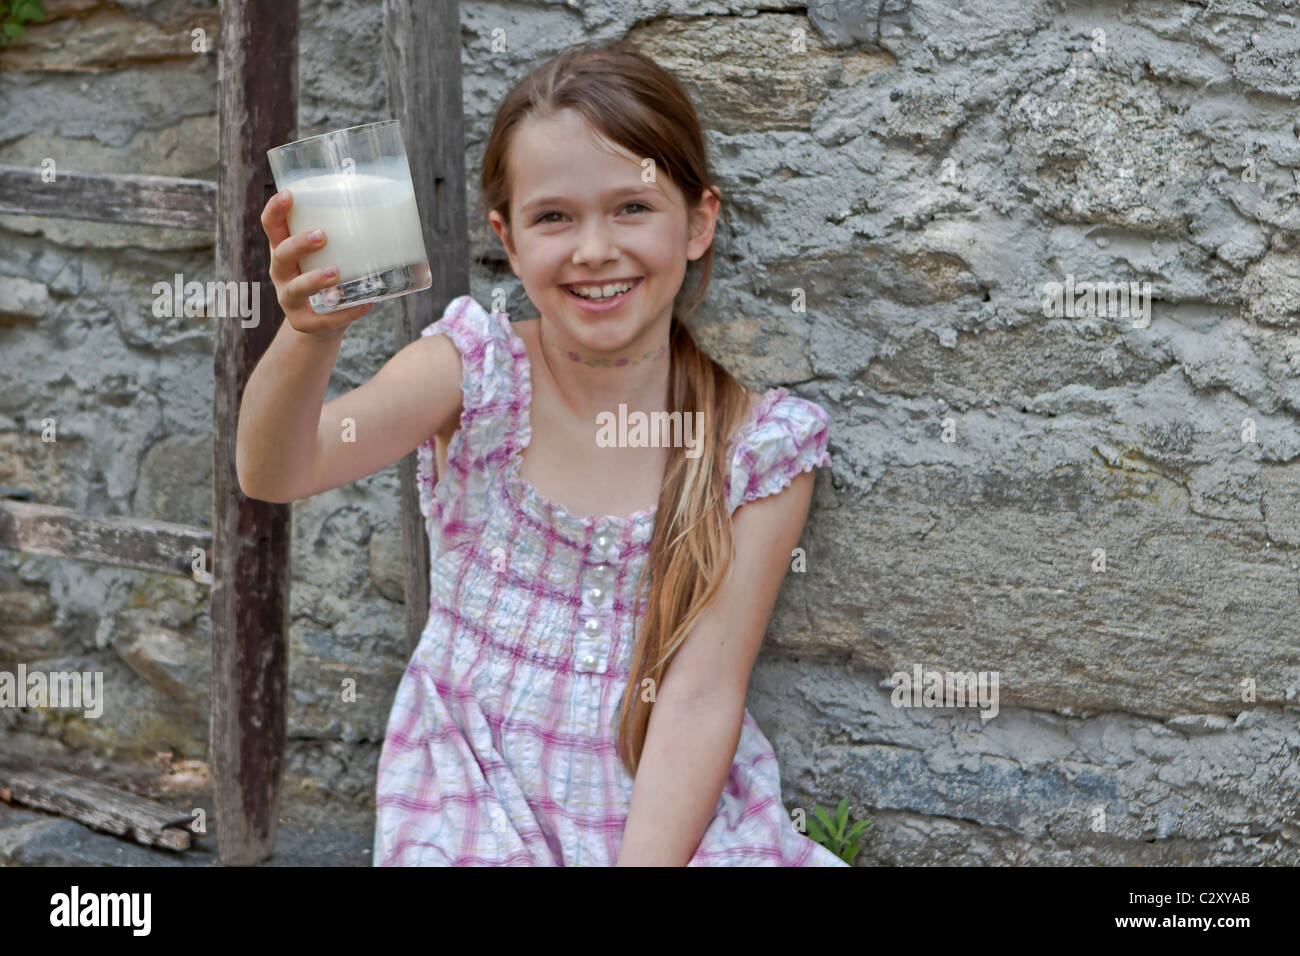 Mädchen ist Milch trinken. Stockfoto